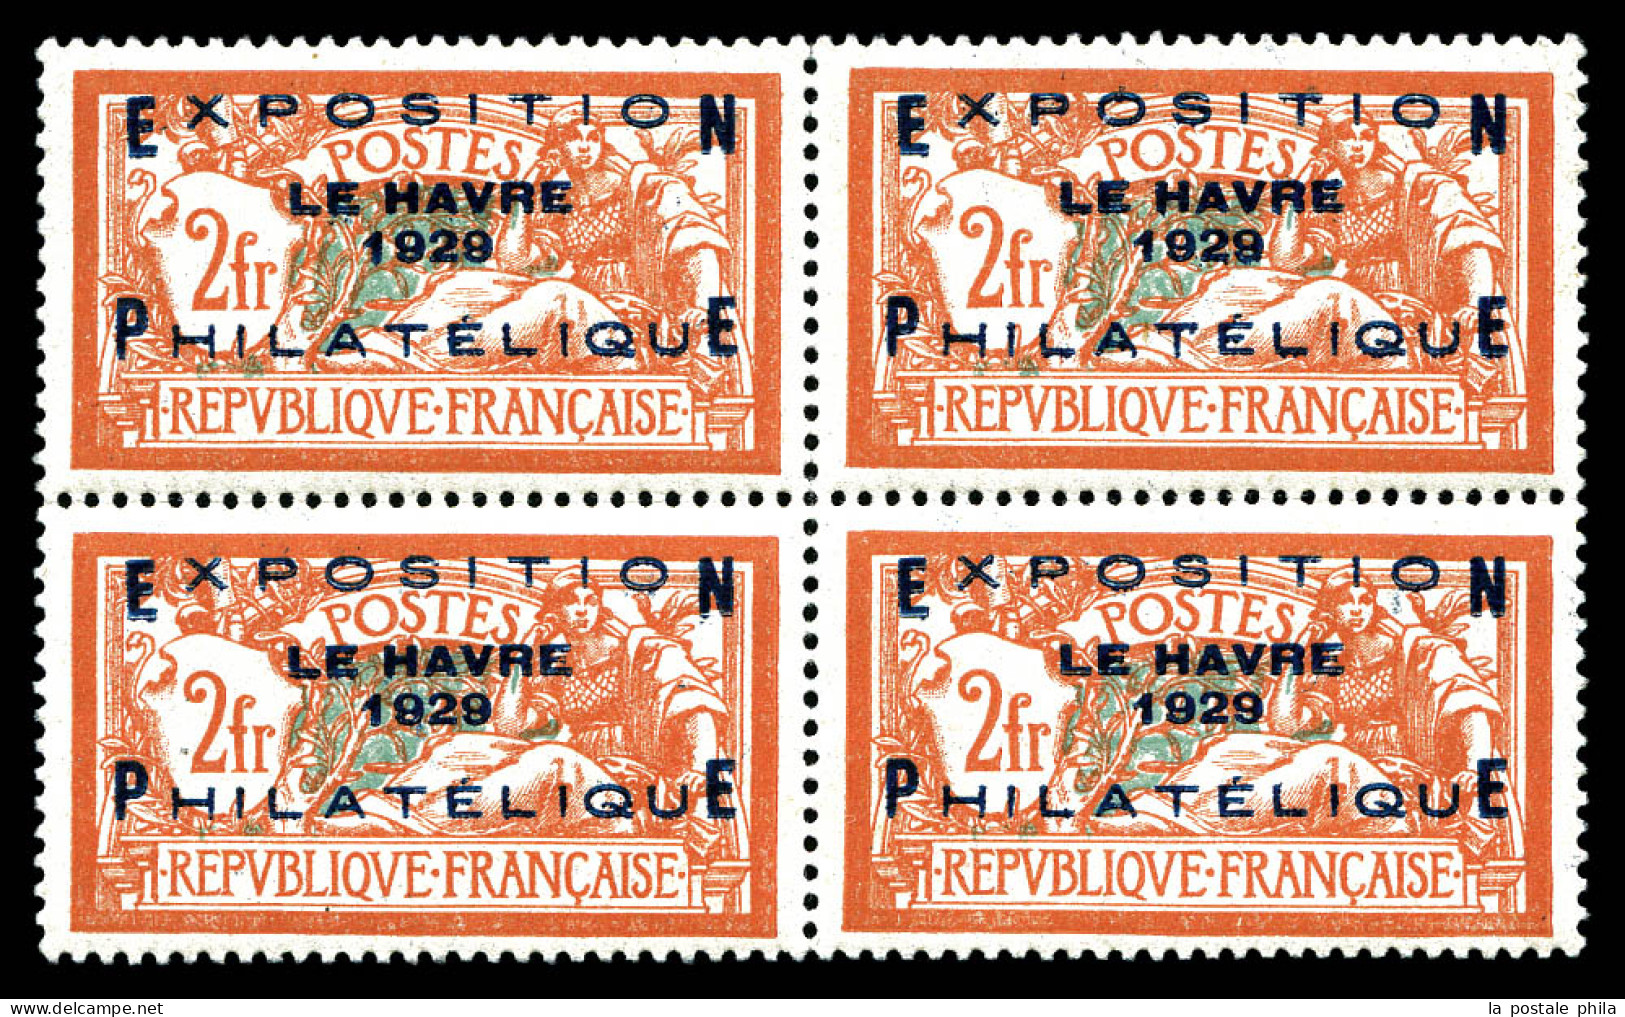 ** N°257A, Exposition Du Havre 1929 En Bloc De Quatre, Fraîcheur Postale, Très Bon Centrage. SUP. R.R. (certificat)  Qua - Neufs